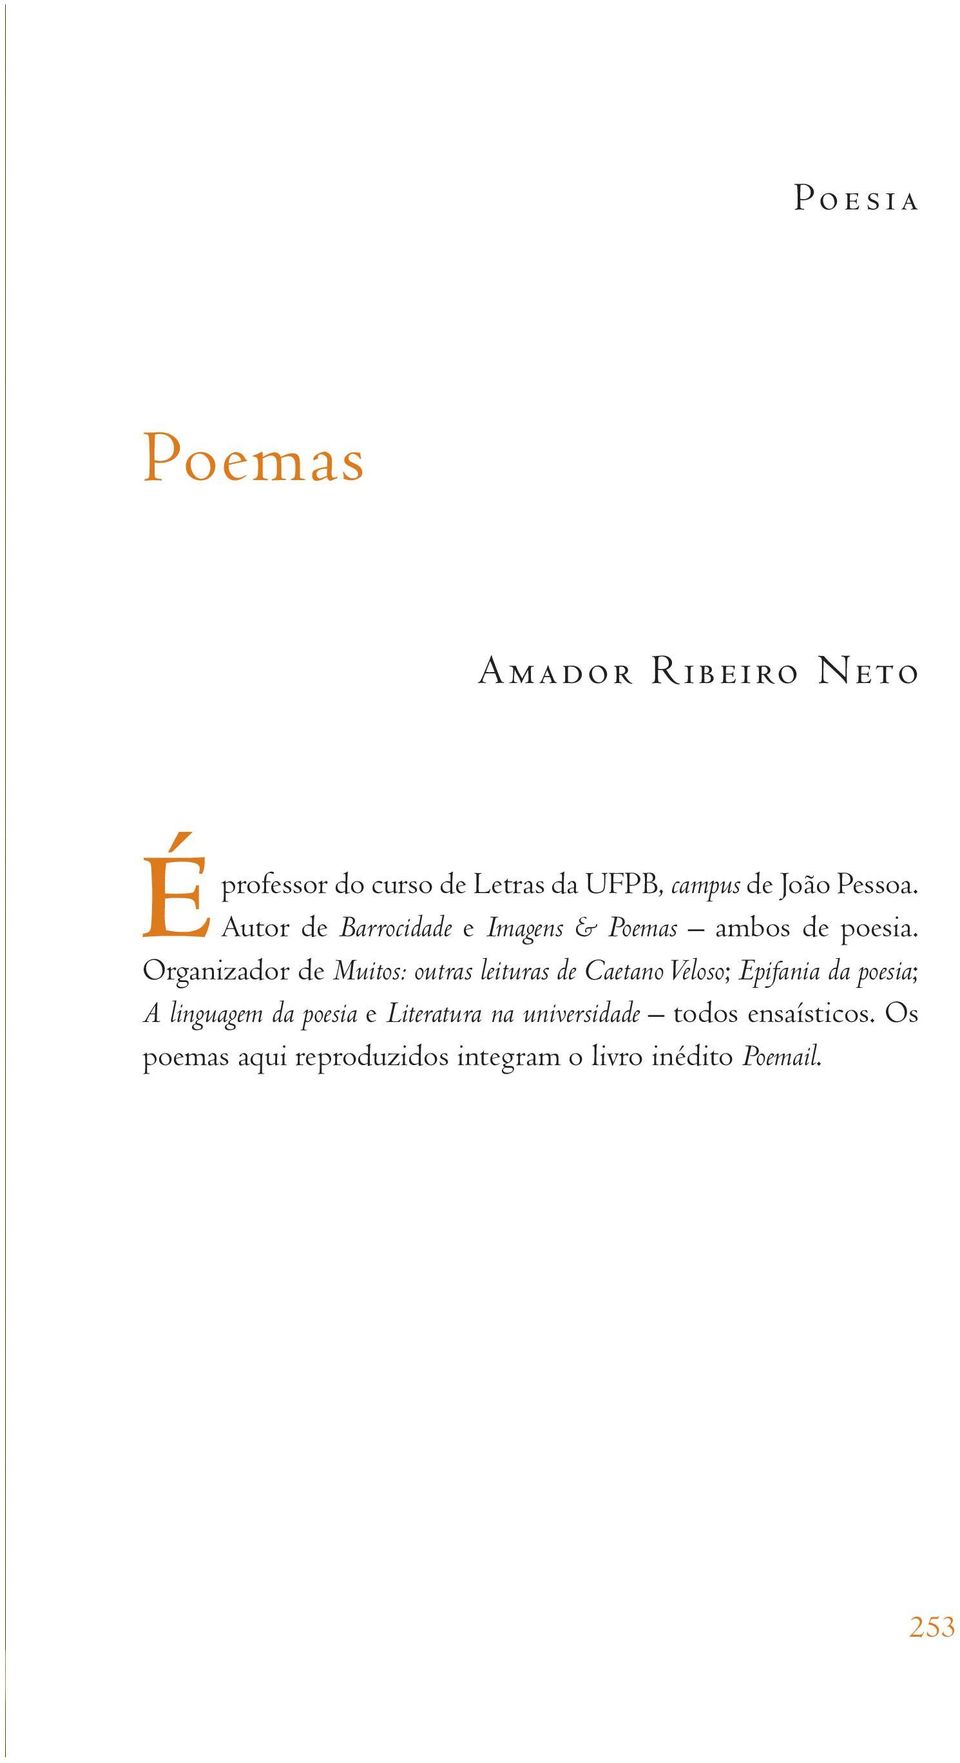 Organizador de Muitos: outras leituras de Caetano Veloso; Epifania da poesia; A linguagem da